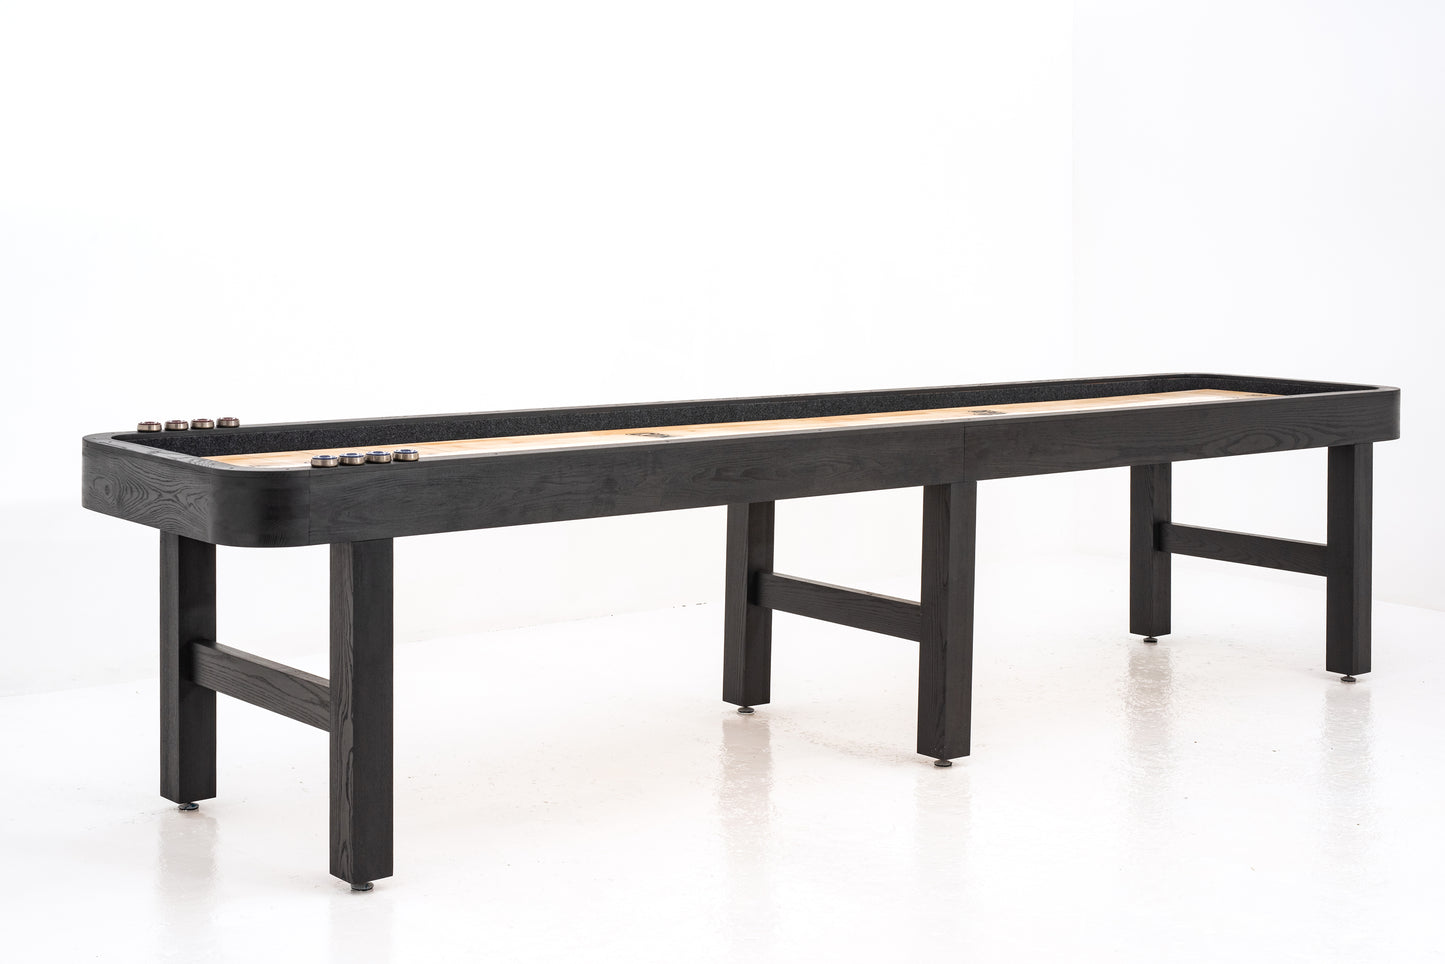 Shuffleboard table